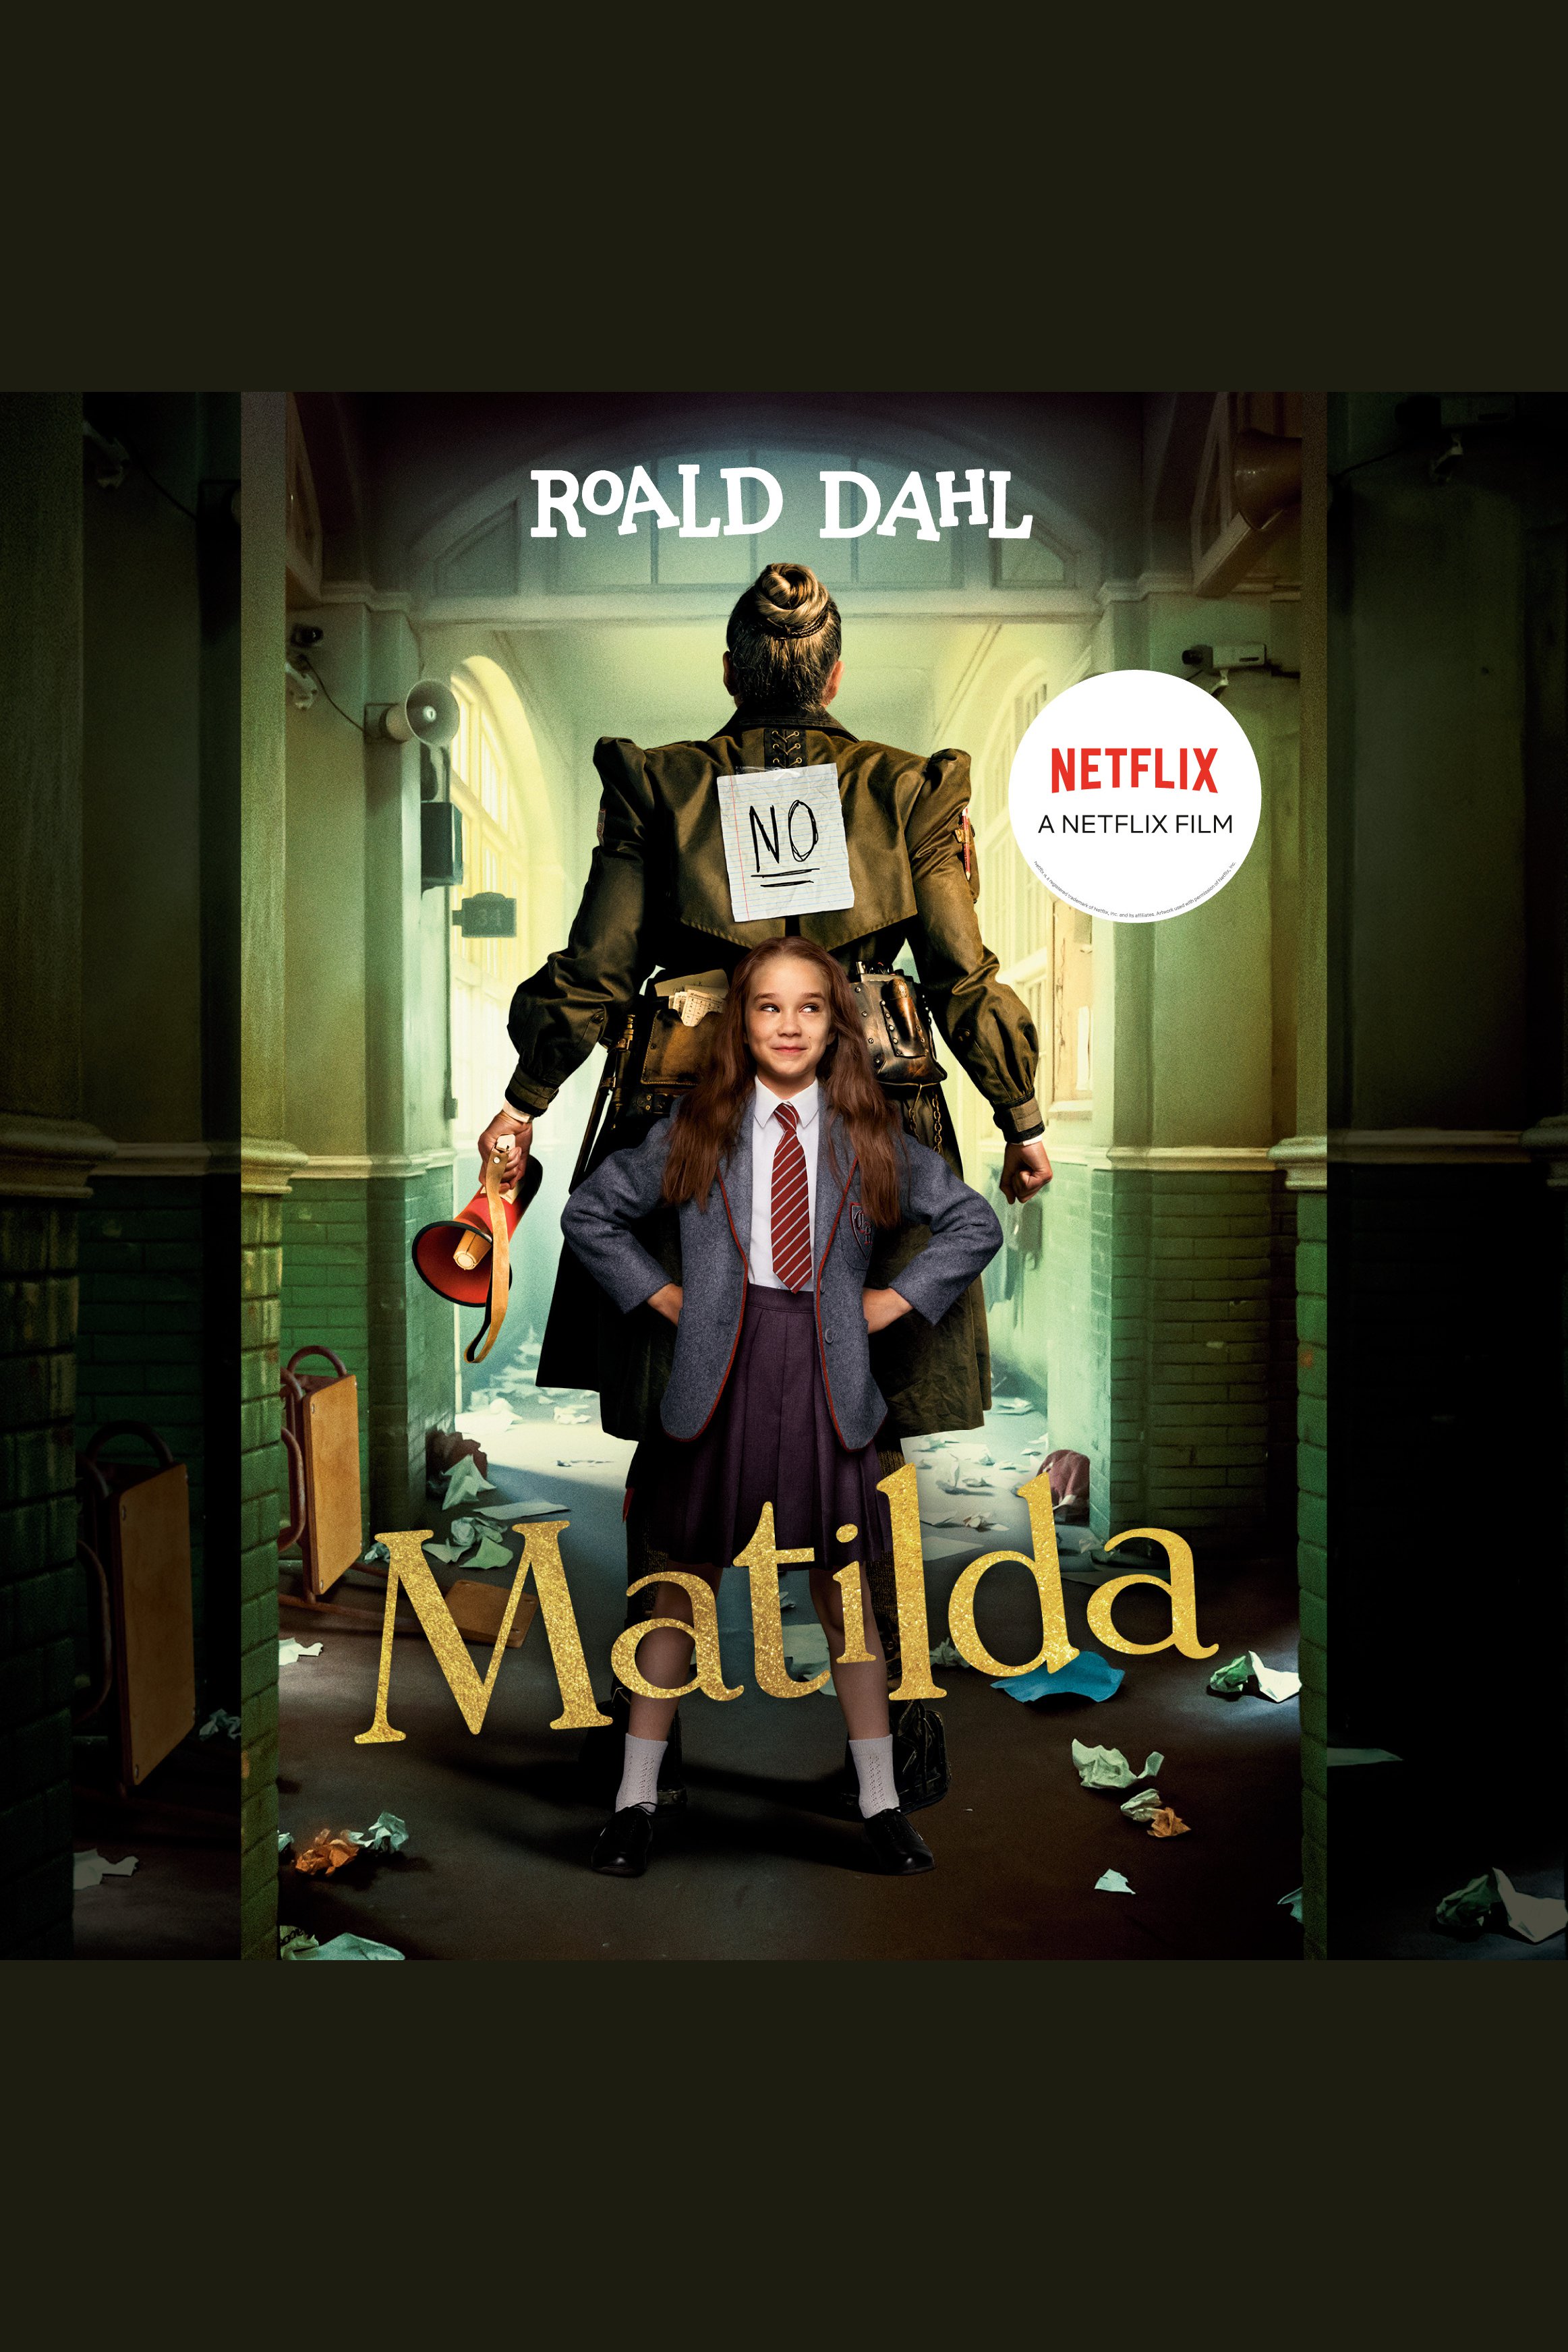 Matilda cover image